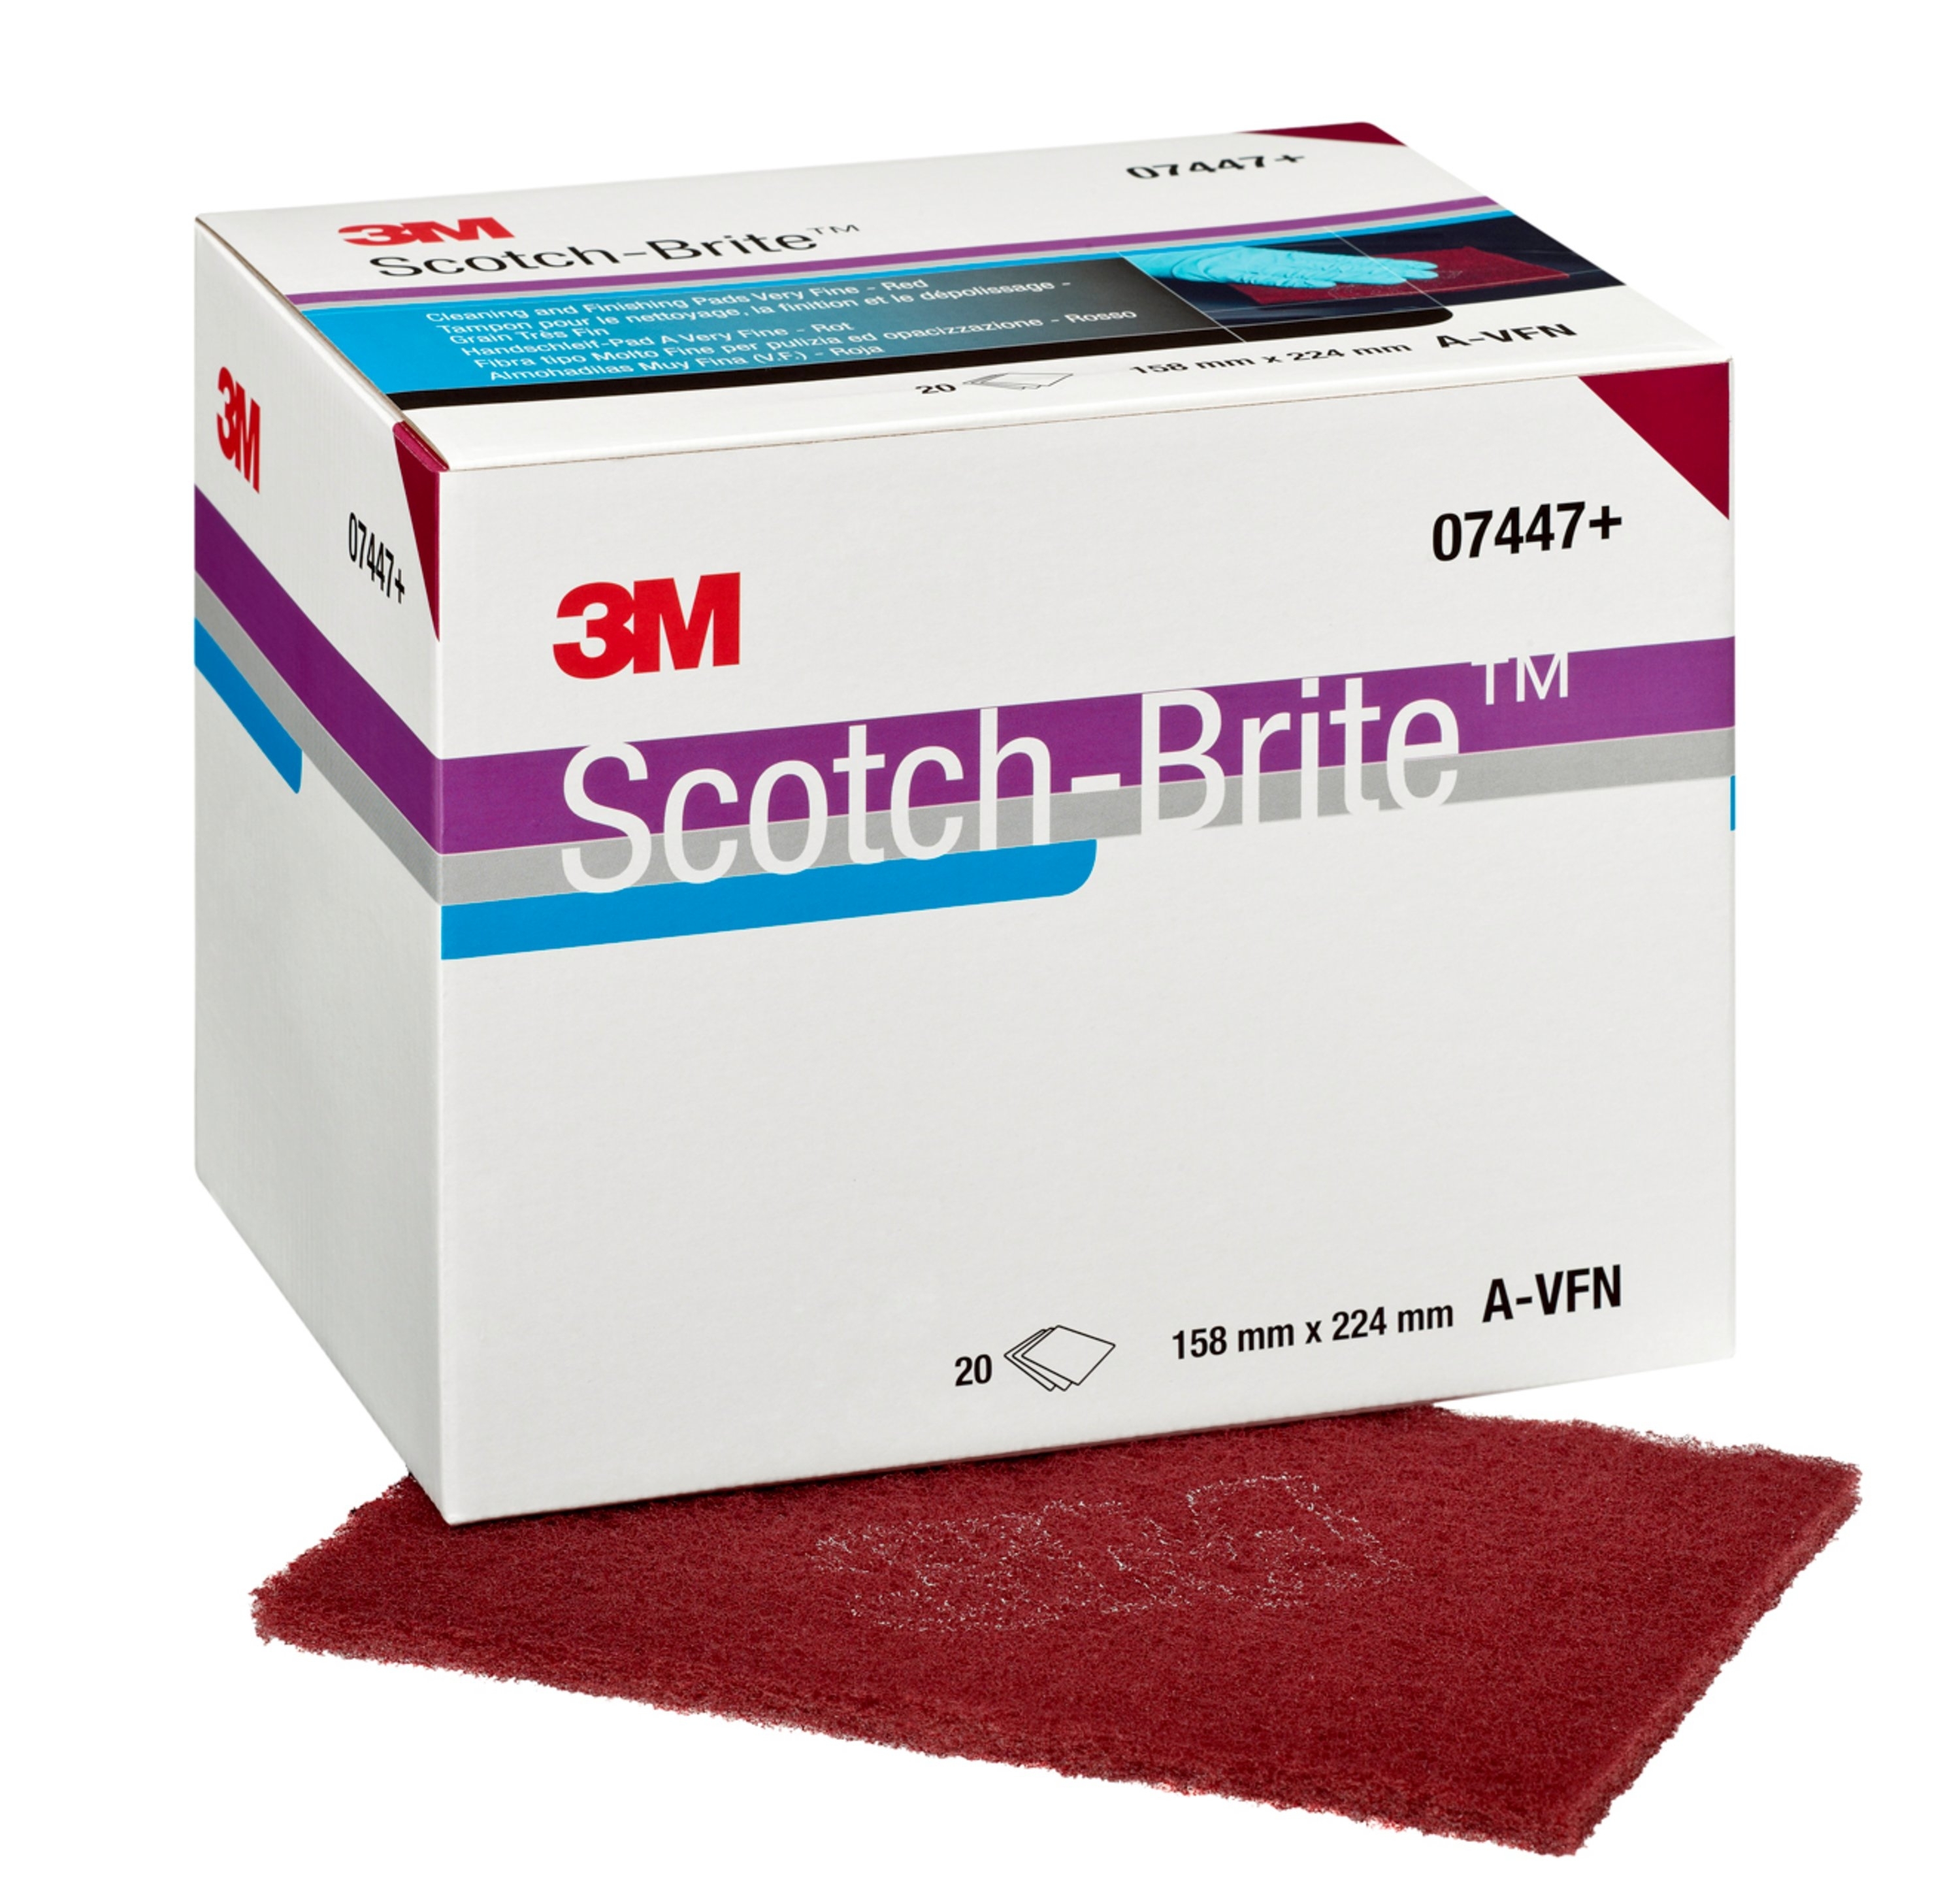 3M-Scotch-Brite-Handpad